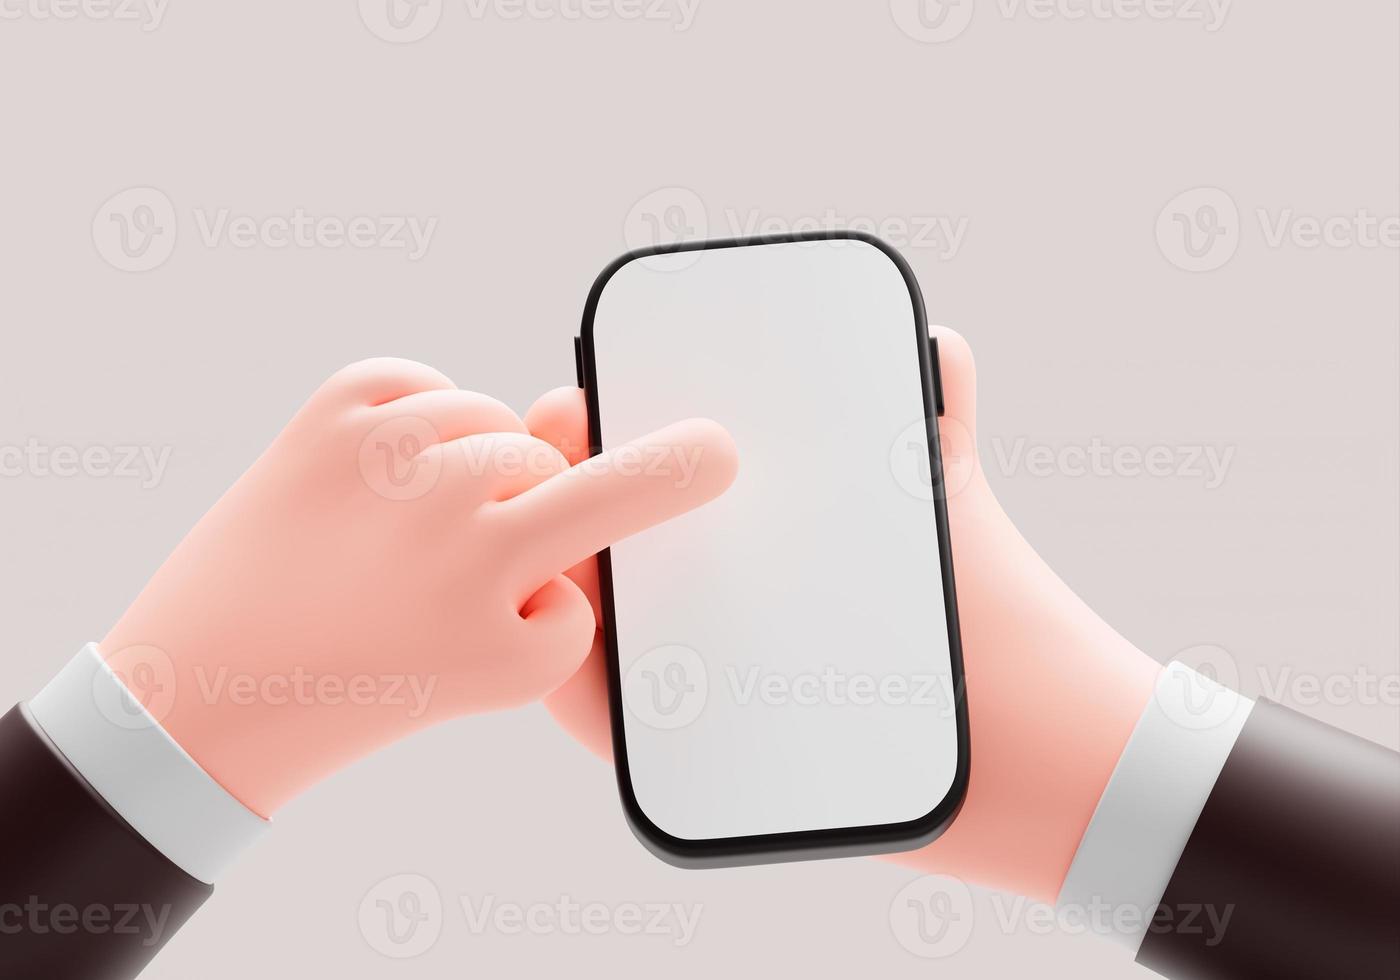 mano que sostiene y usa la aplicación de pantalla táctil del teléfono inteligente publicidad concepto de negocio ilustración de dibujos animados representación 3d foto